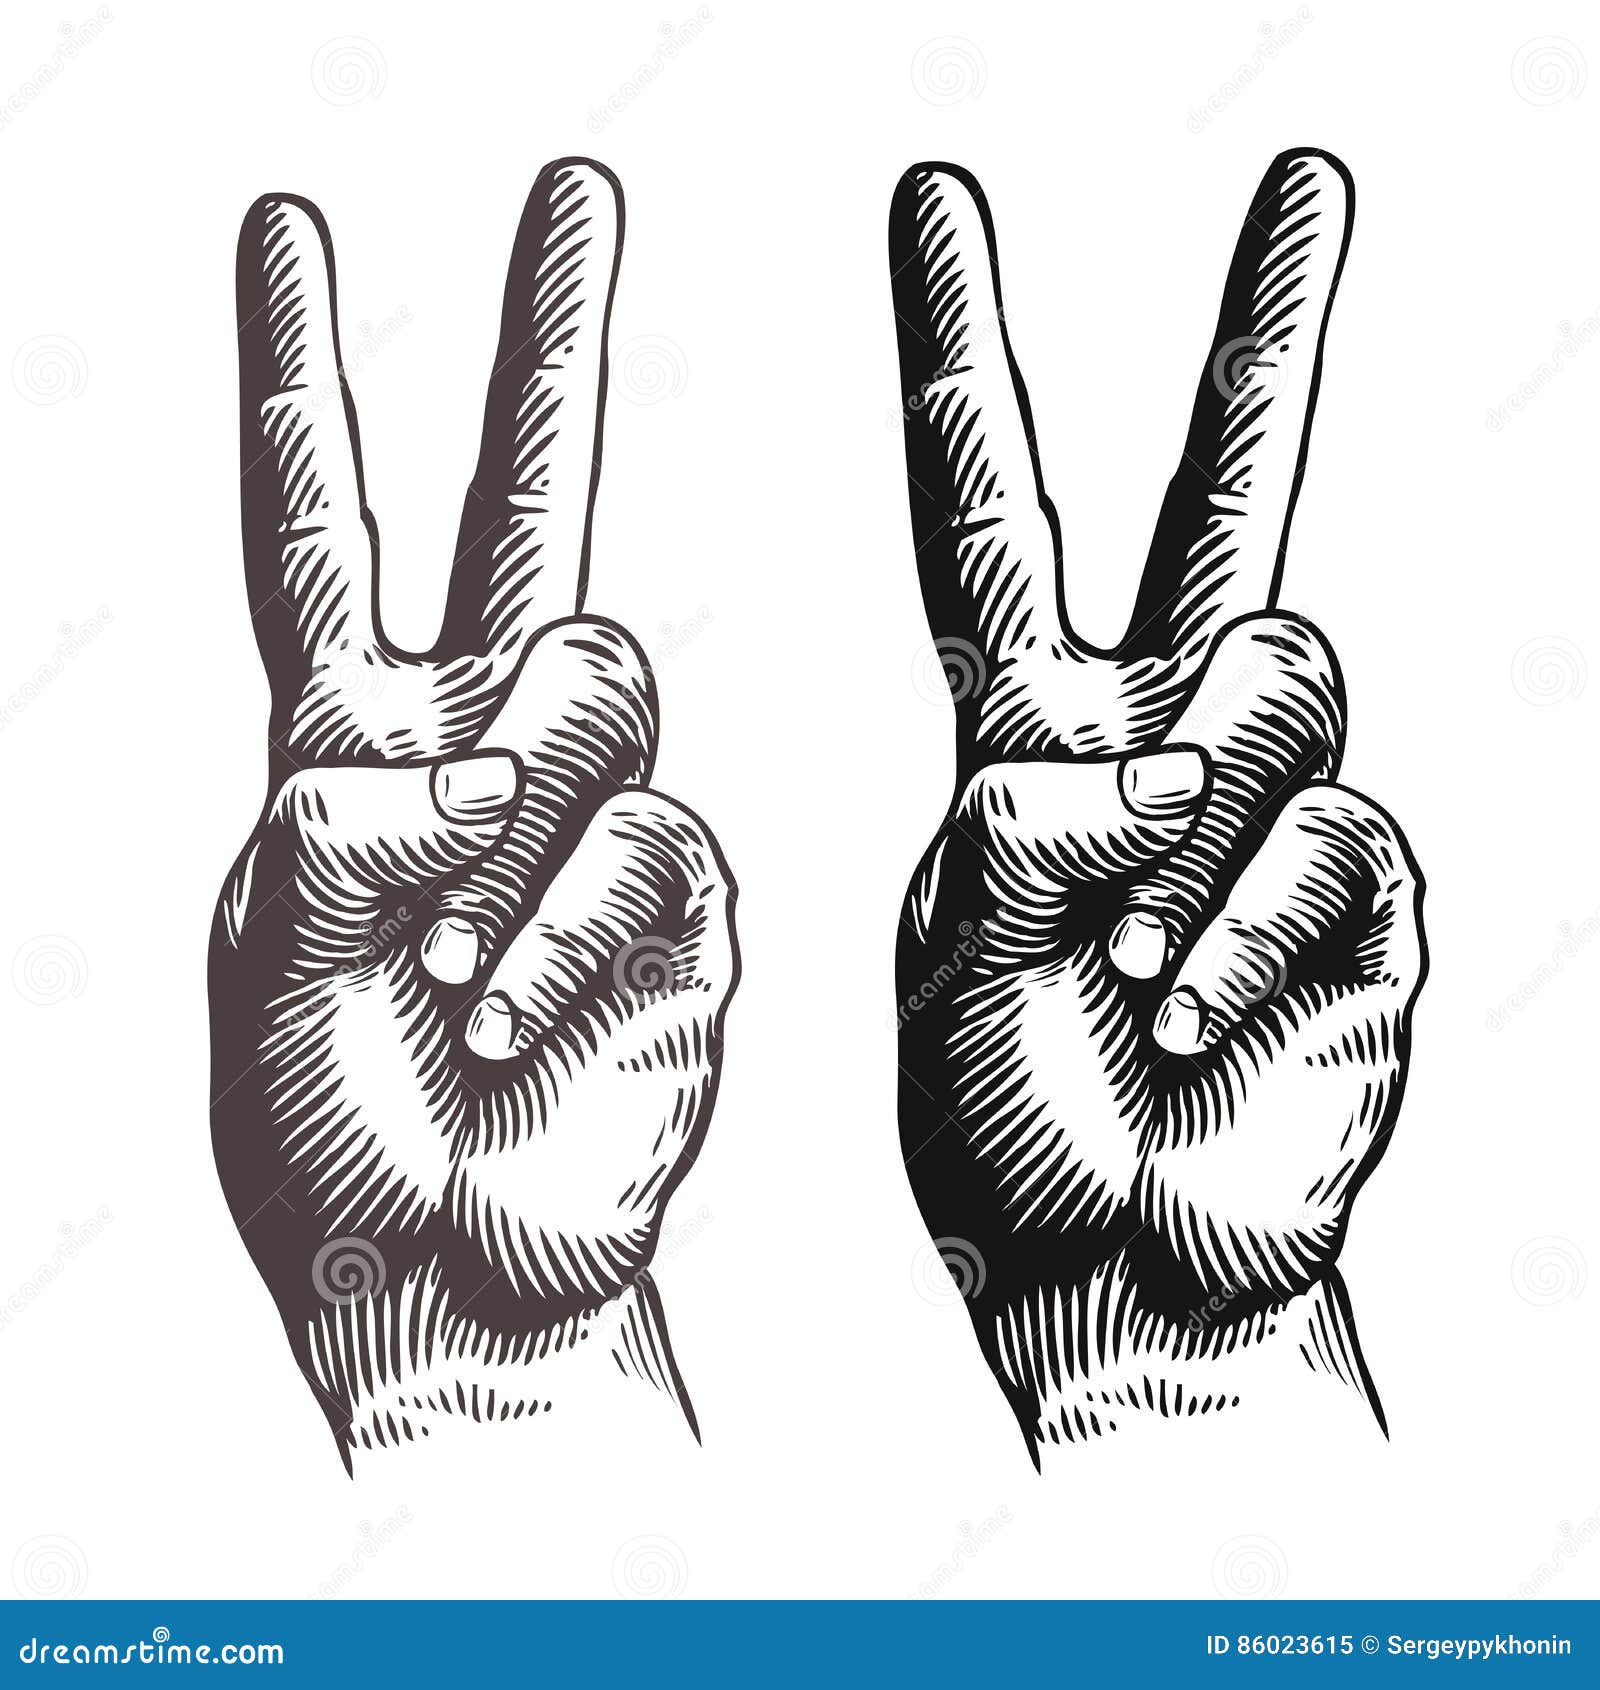 世界和平日手势海报图片素材-编号26340033-图行天下